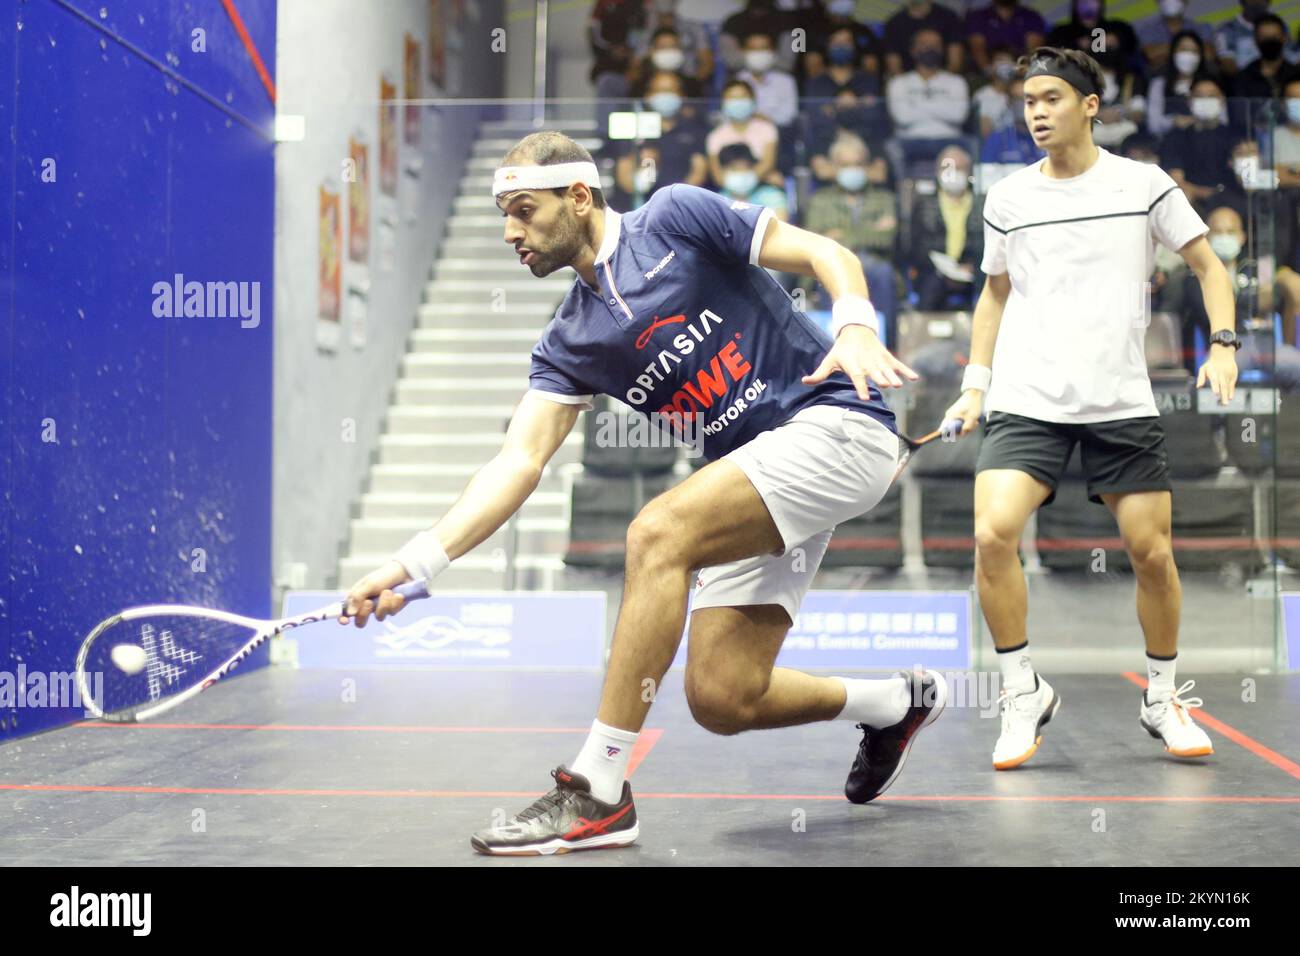 Mohamed ElShorbagy en Angleterre en action contre ng Eain Yow de Malaisie lors de l'Open de squash de Hong Kong 2022. Mohamed ElShorbagy gagne 11-9, 11-9, 11-5. 29NOV22 Banque D'Images